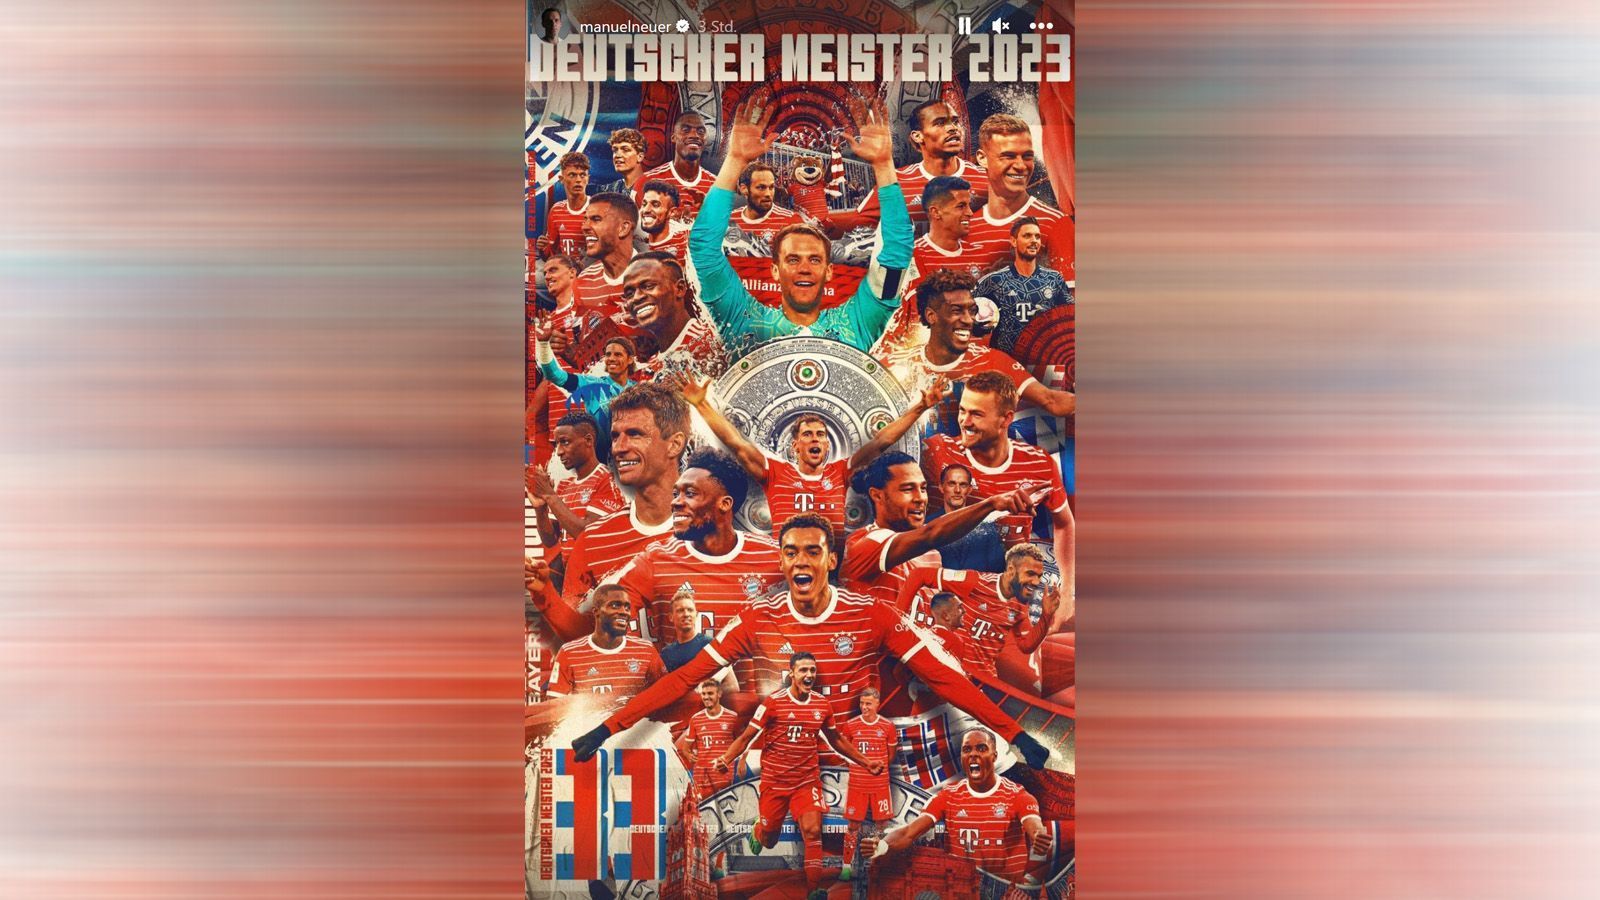 
                <strong>Deutscher Meister</strong><br>
                Manuel Neuer und zahlreiche andere Spieler posten in den sozialen Medien das offizielle Meisterschafts-Plakat der Bayern. 
              